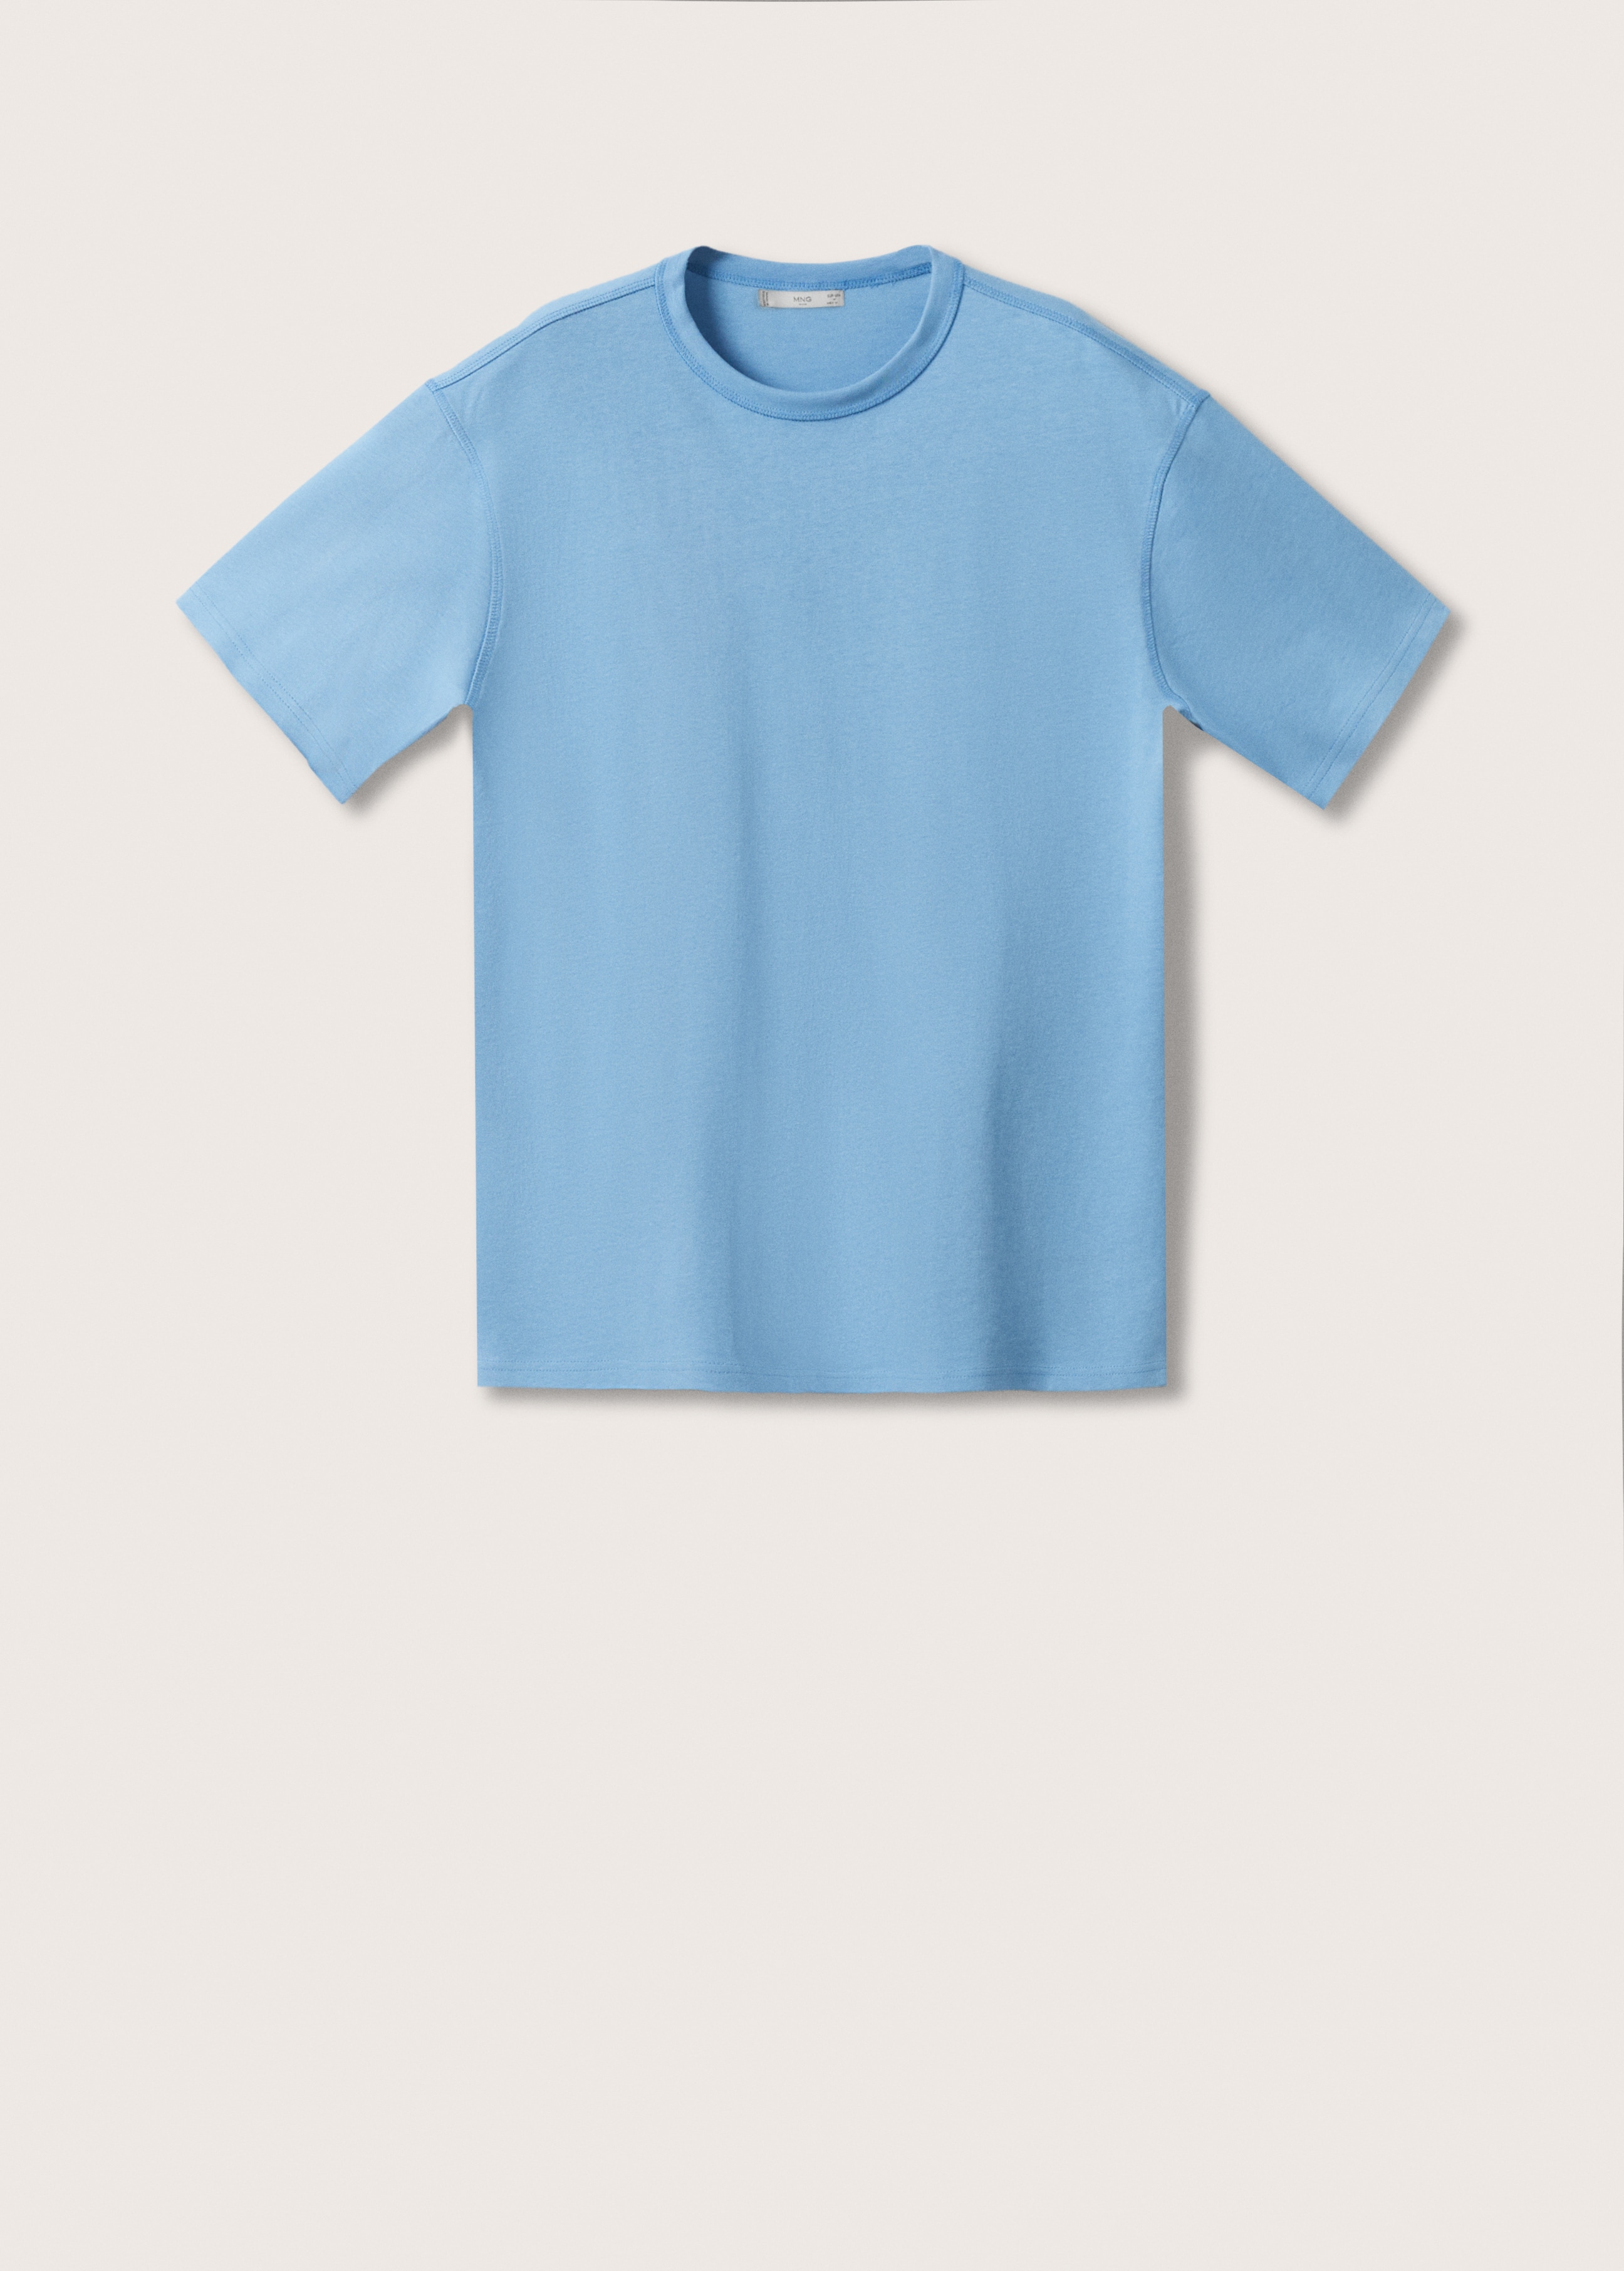 Camiseta algodón relaxed fit - Artículo sin modelo